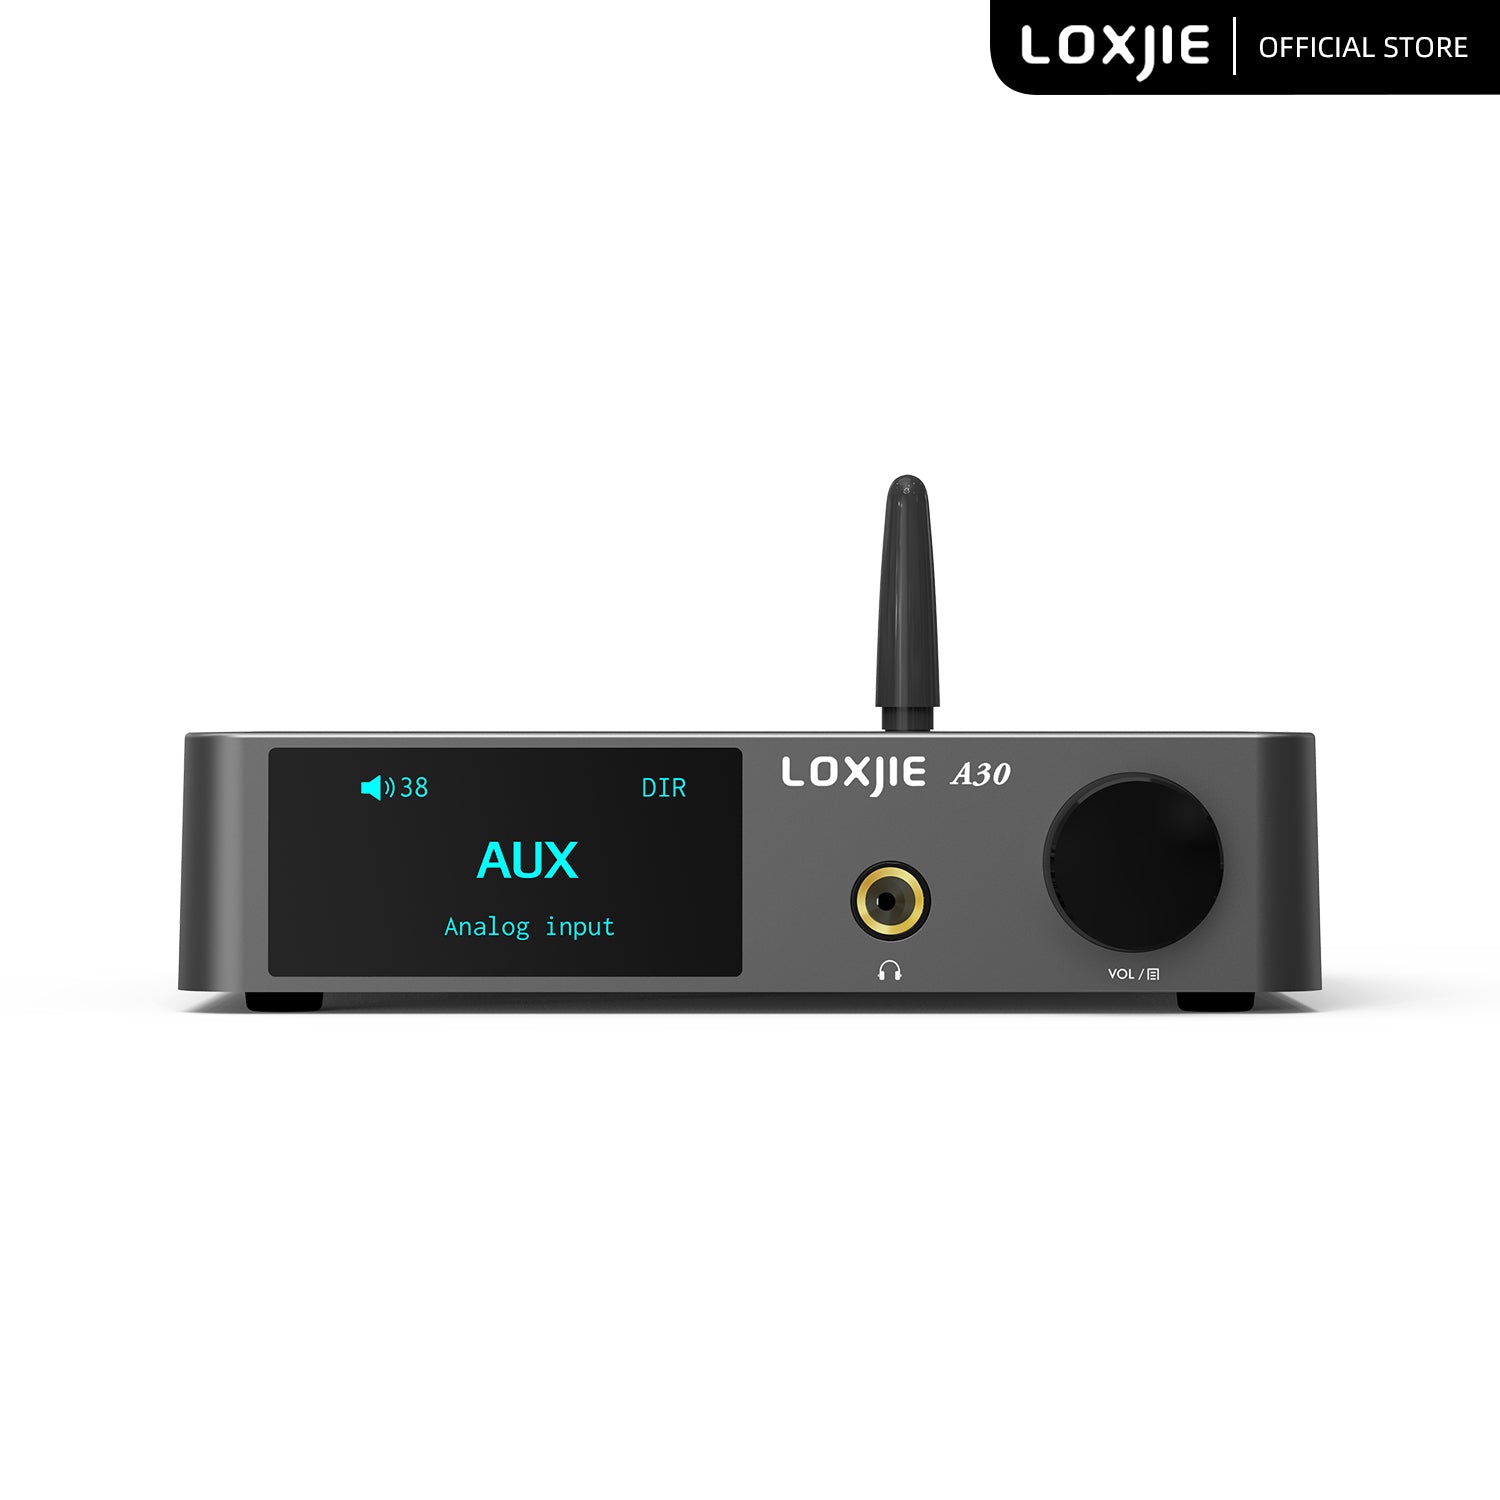 Loxjie A30 Class d amplifier Digital Power Amplifier [in stock] - Hifi-express